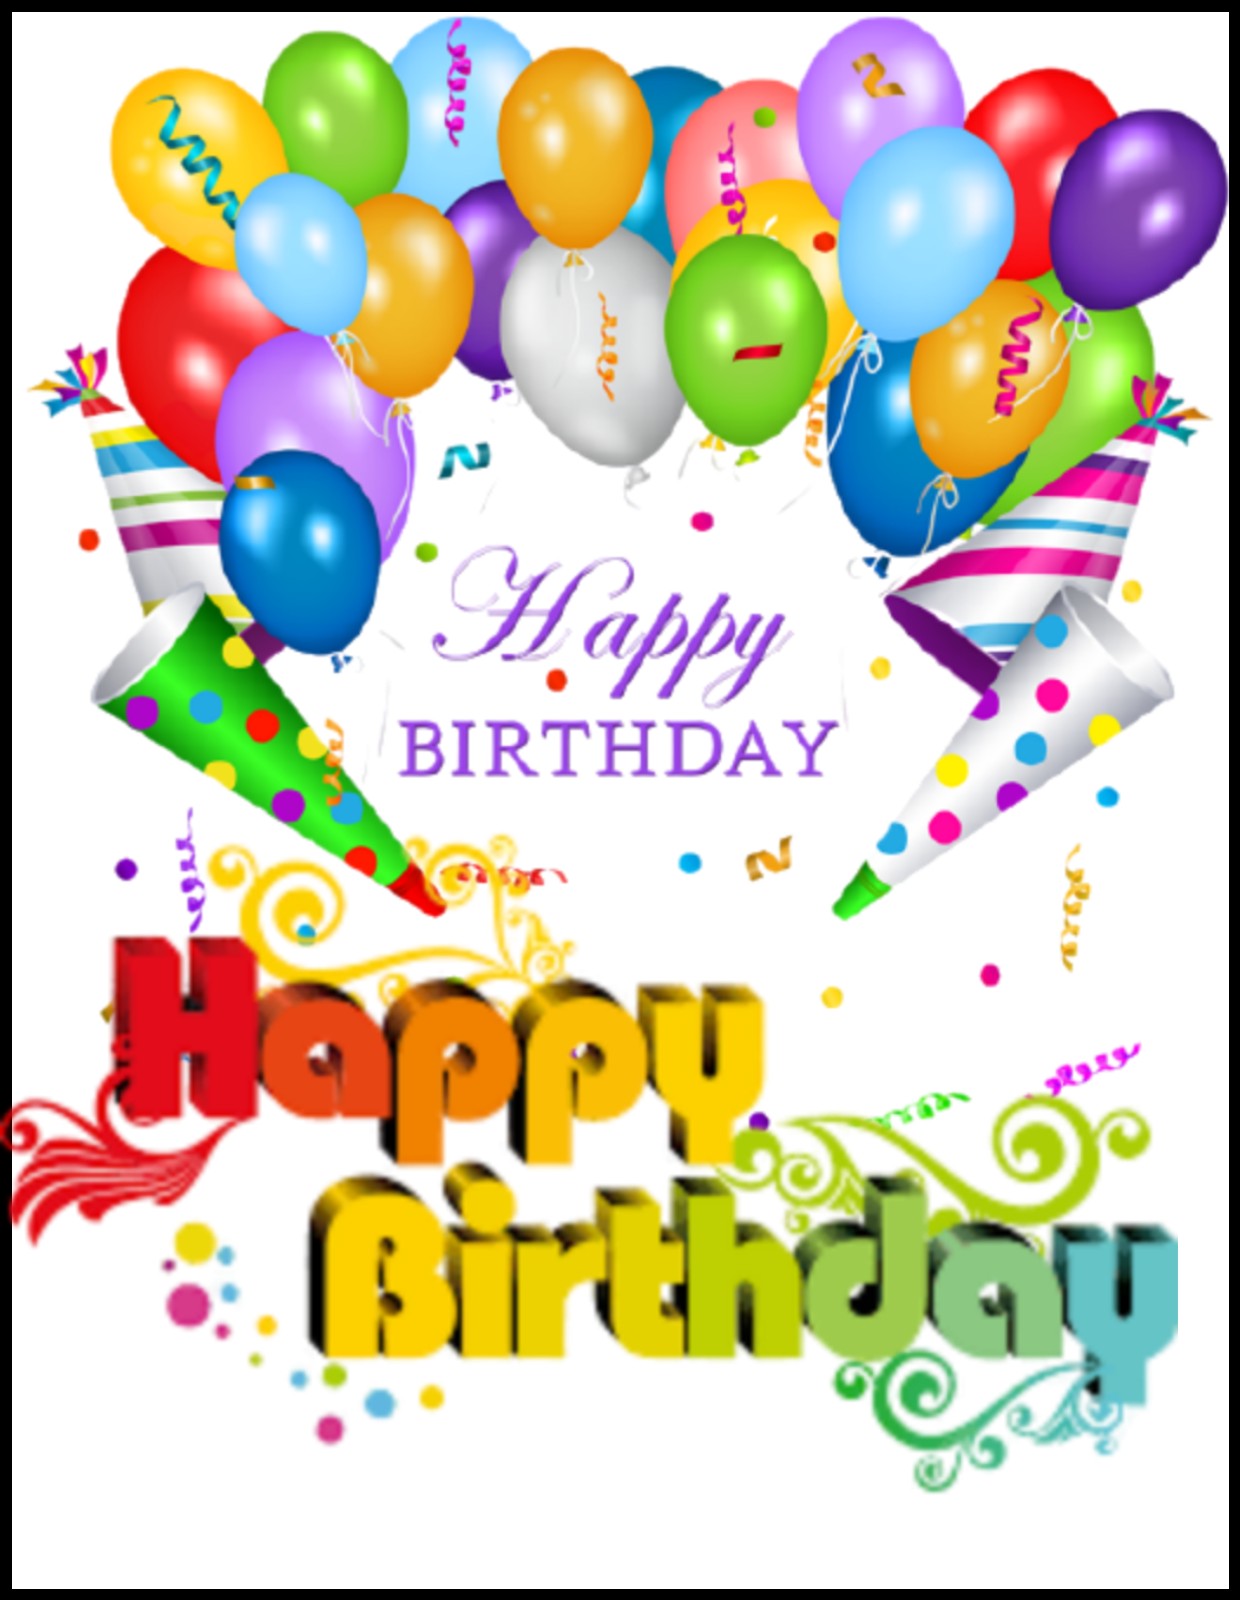 10+ Best Happy birthday photo | birthday wishing status image free download